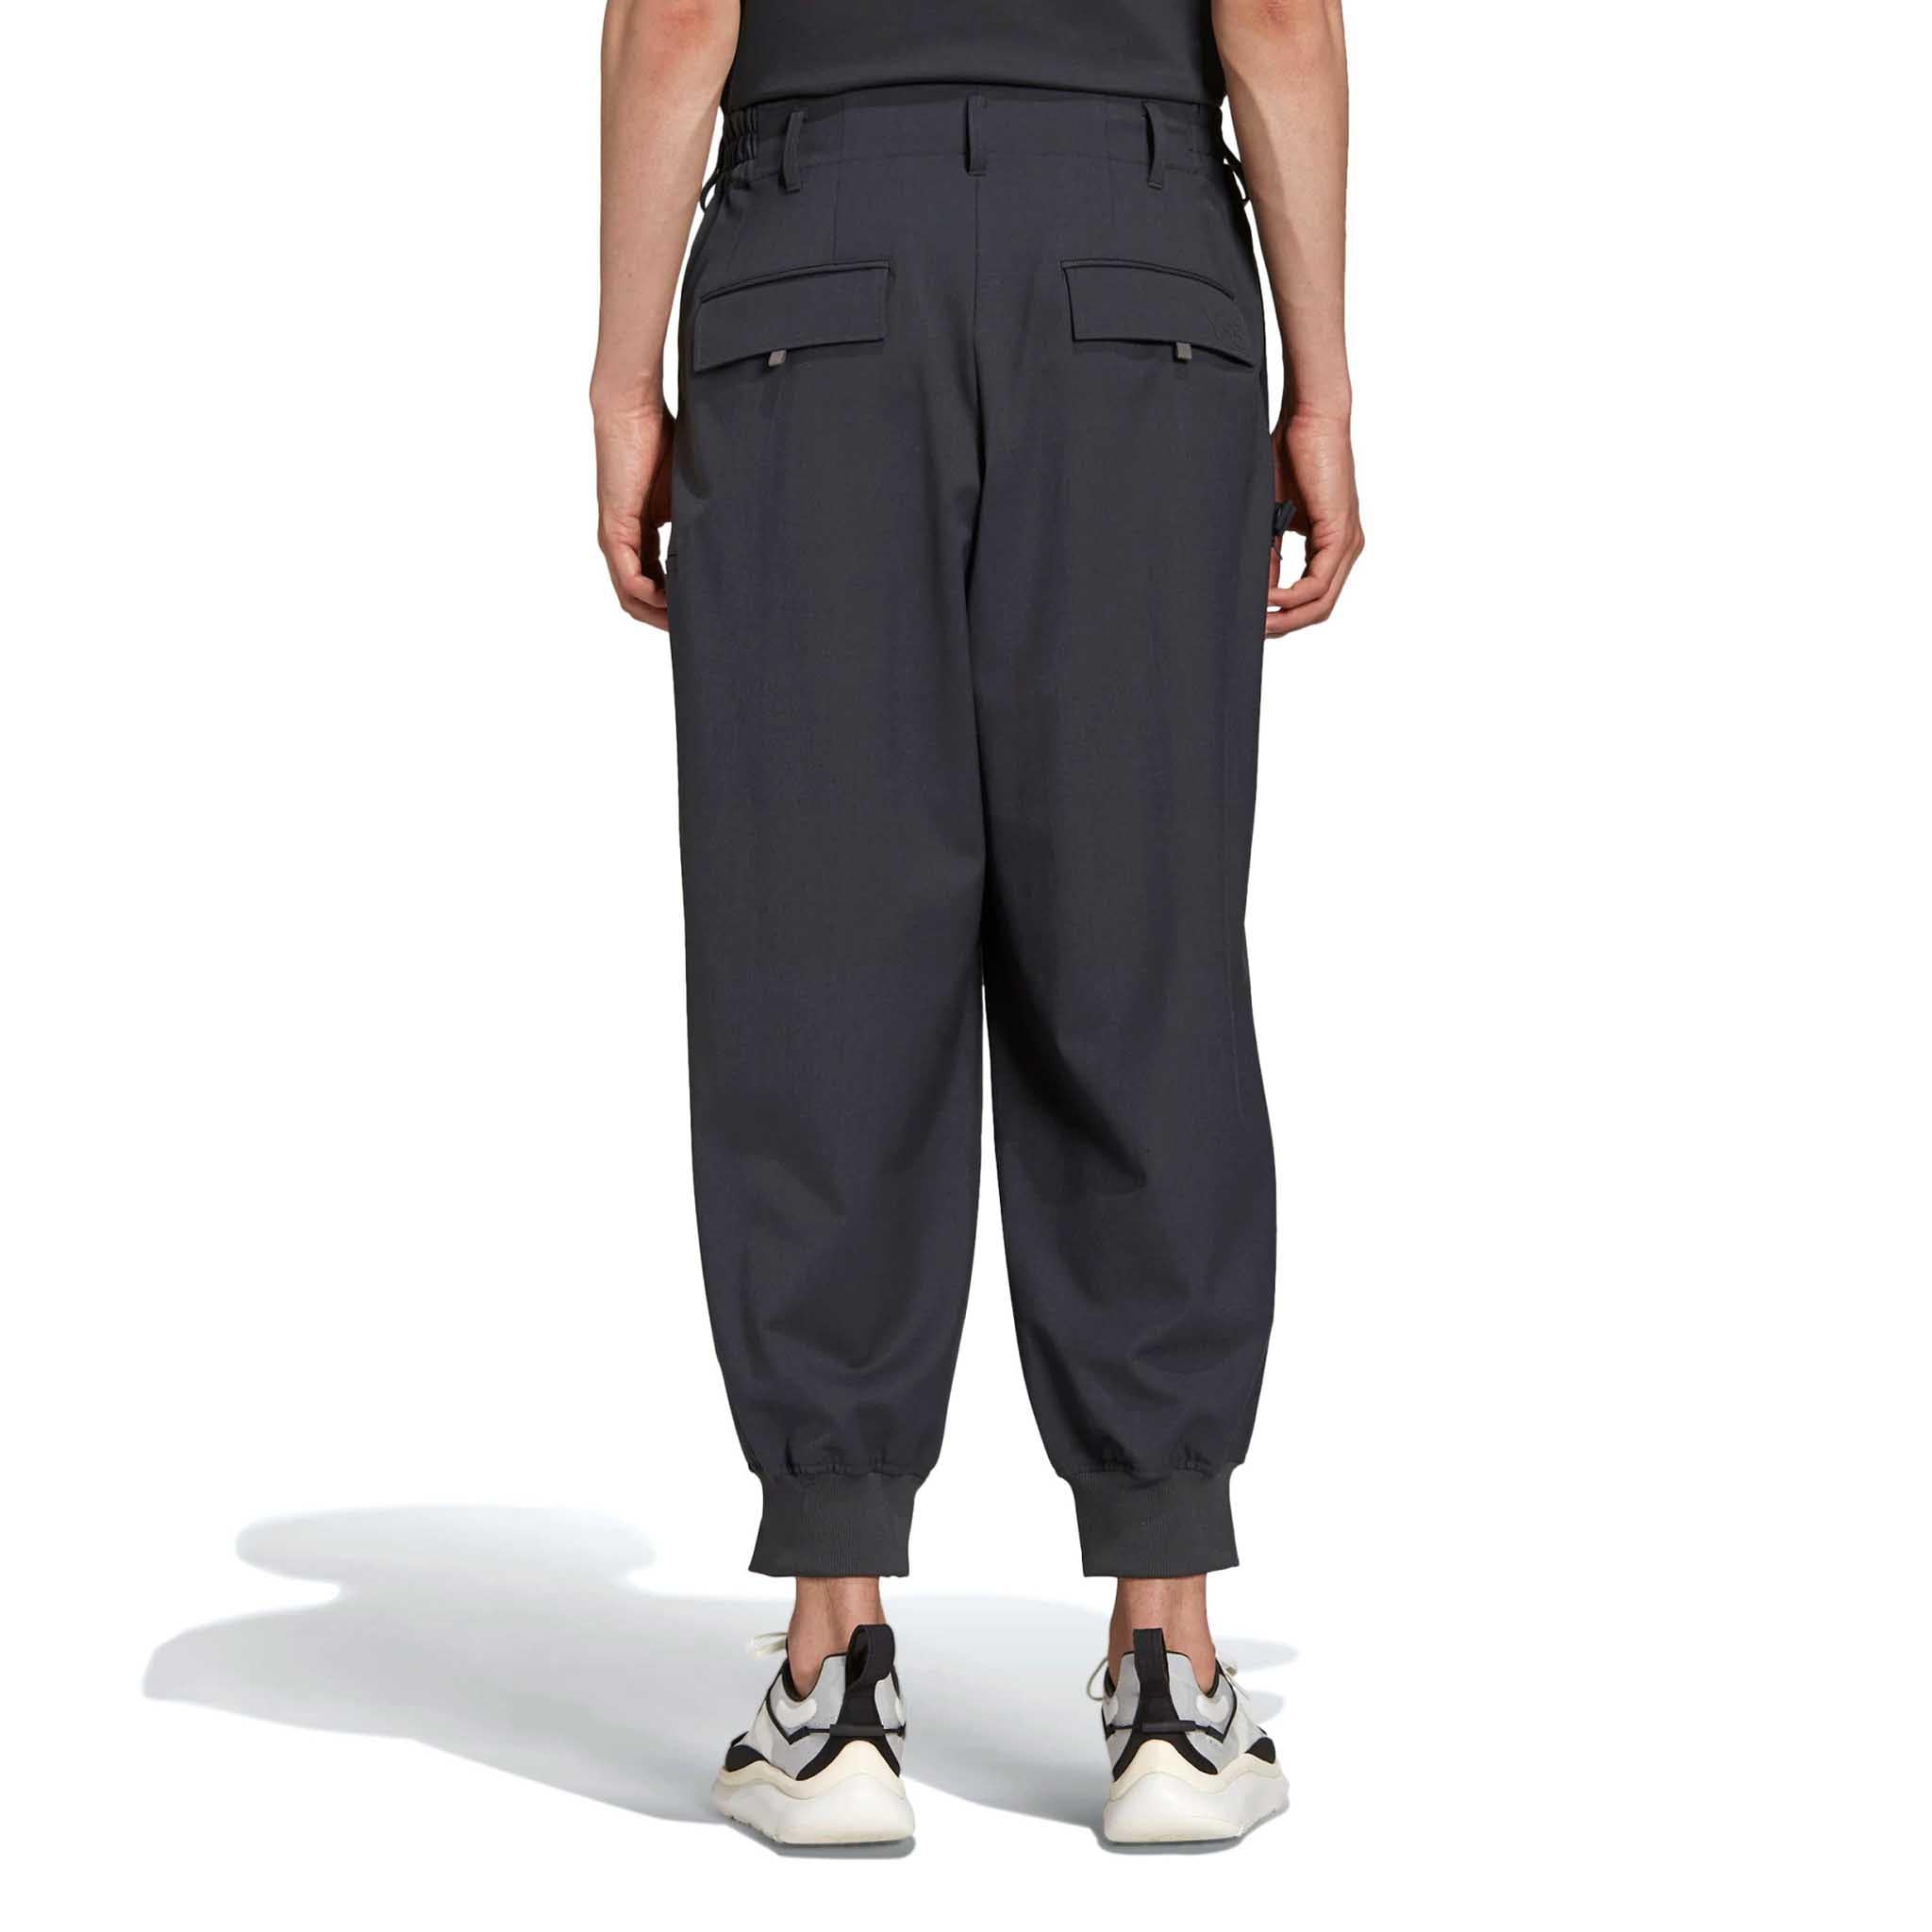 ADIDAS Y-3 Classic Refined Wool Cuff Pants Black